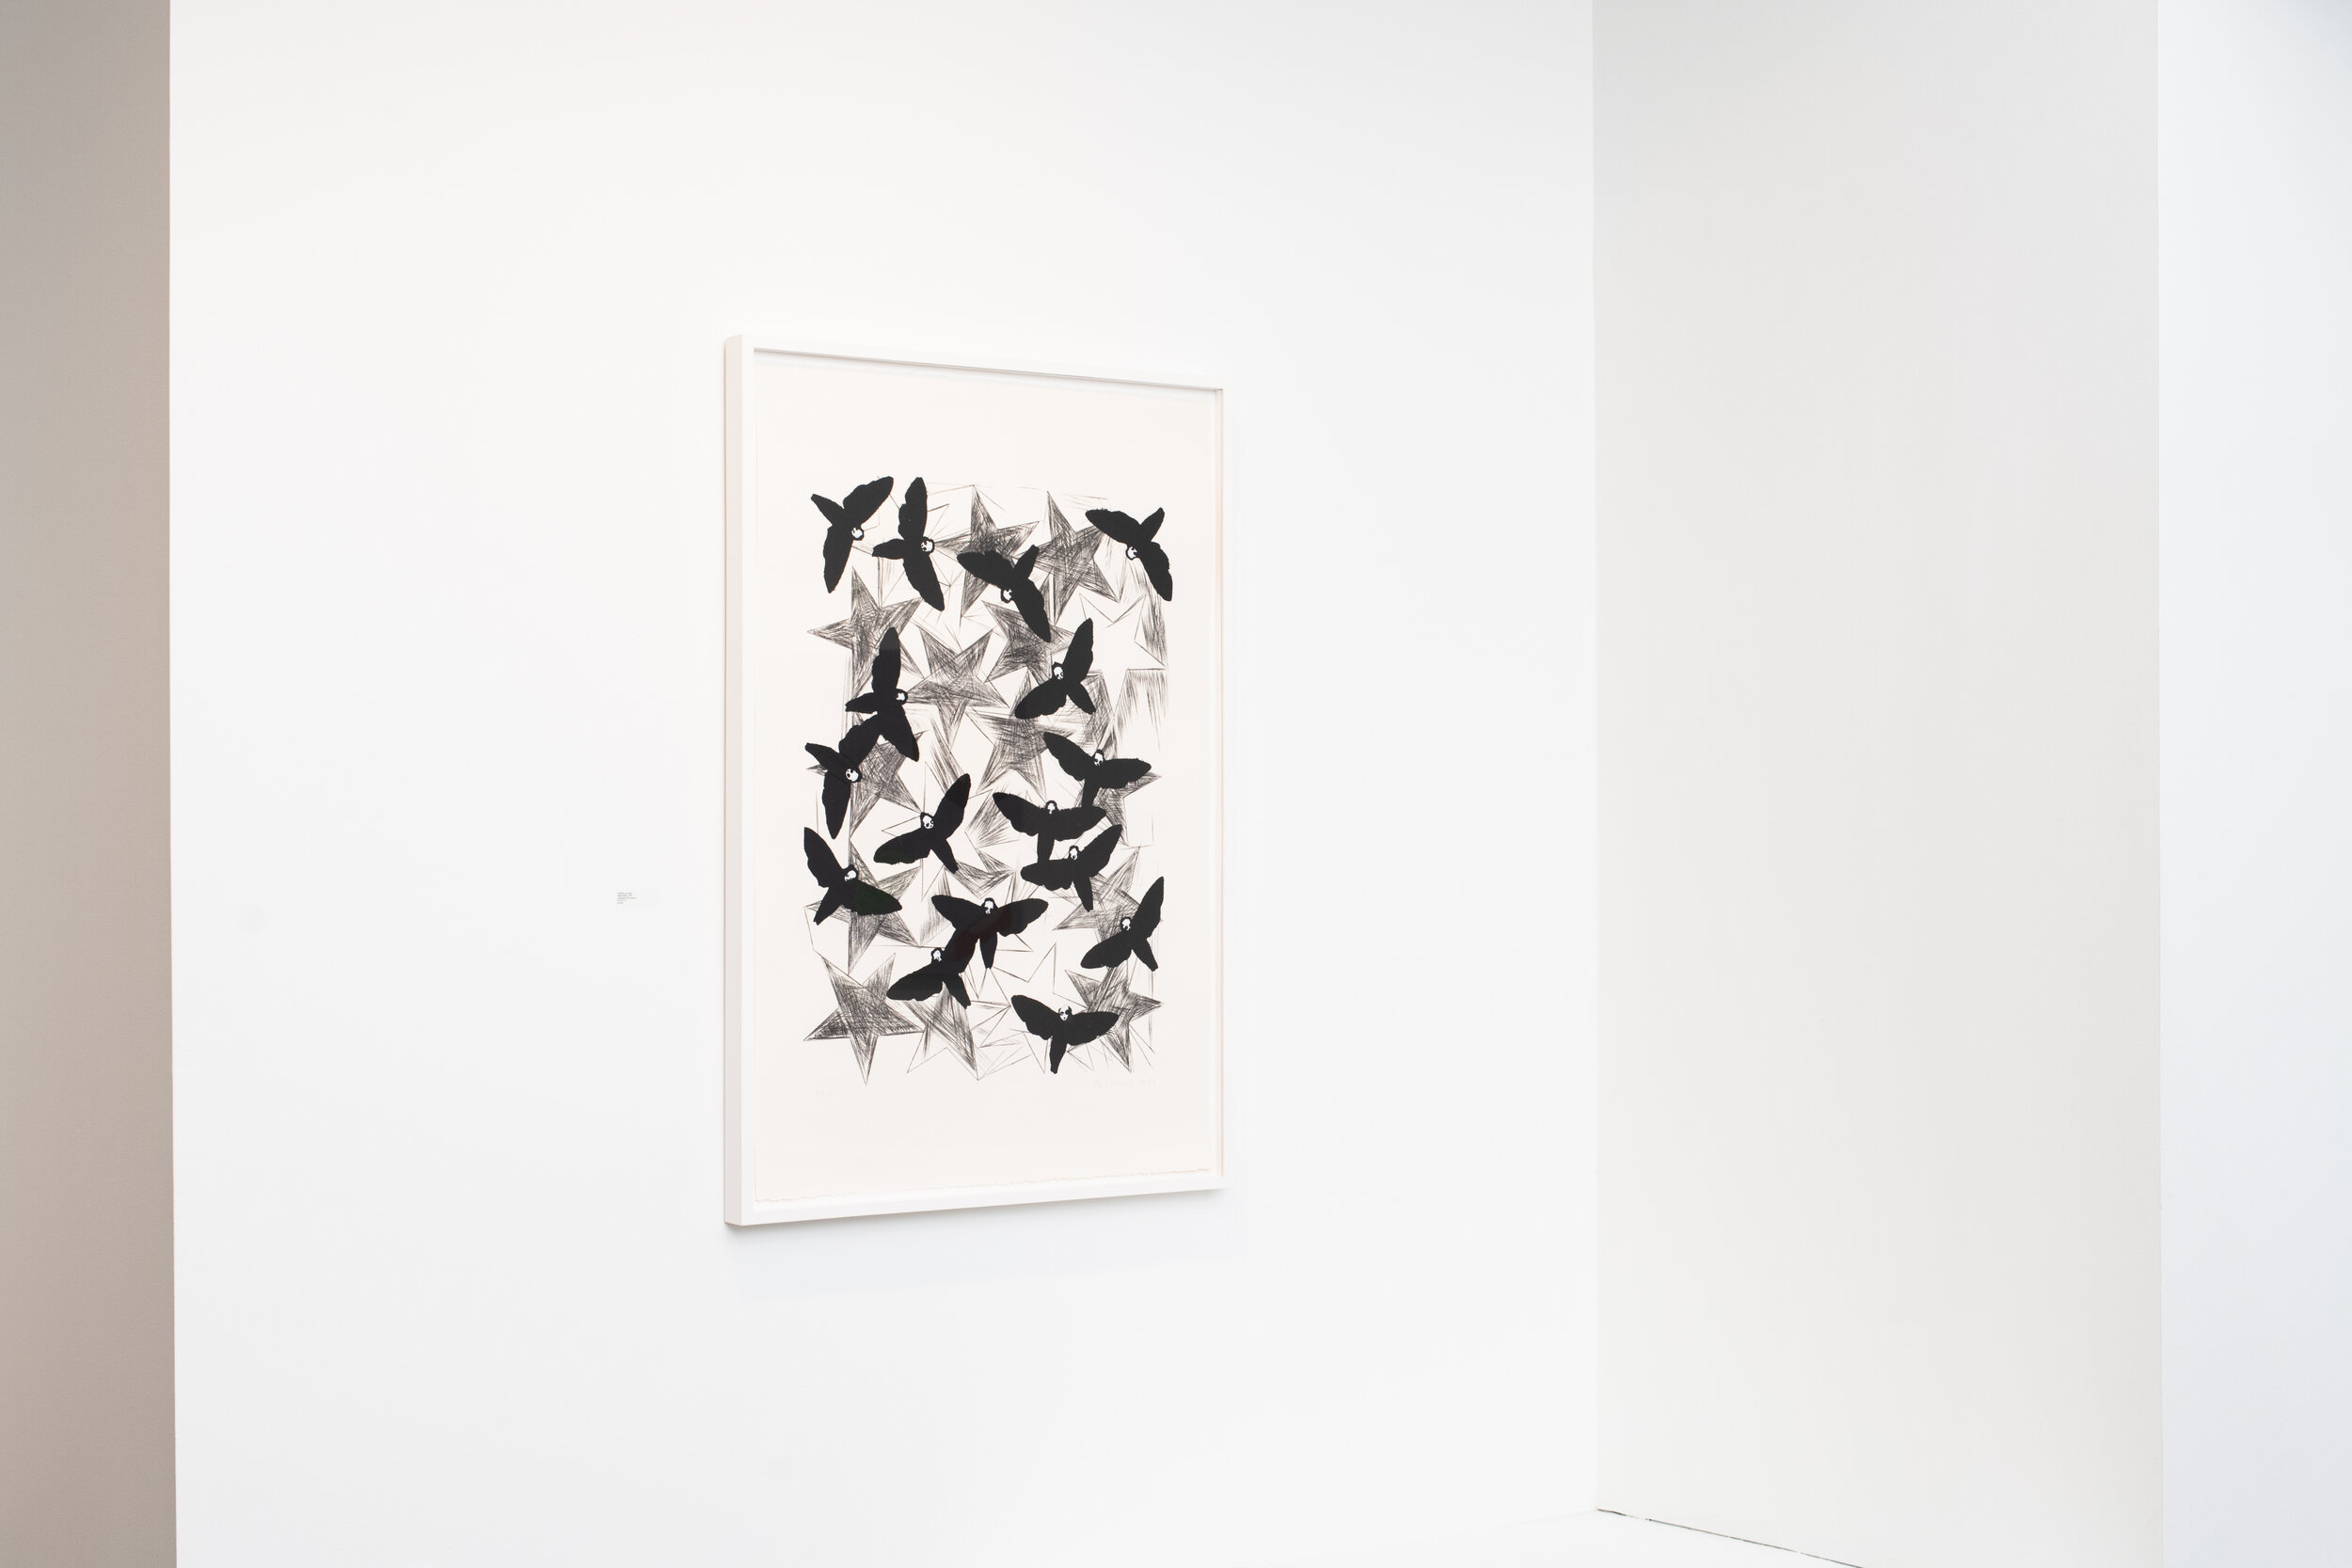  Charline von Heyl   Hawk Moths , 2016  Lithograph with pochoir  47.25 x 31 inches.  $7,000 